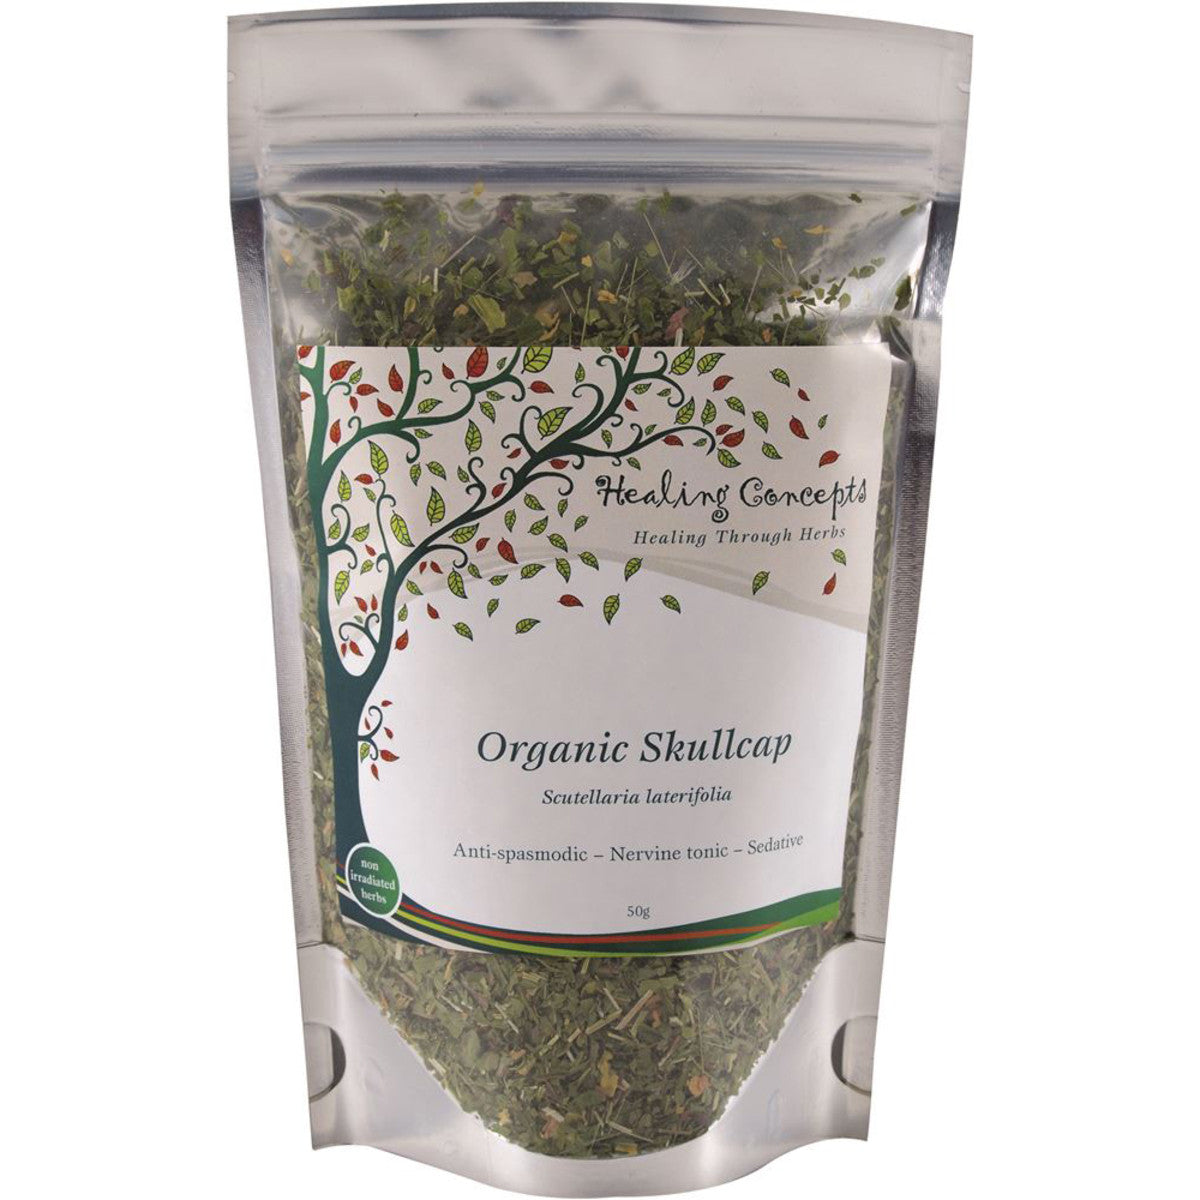 Healing Concepts - Organic Skullcap Tea